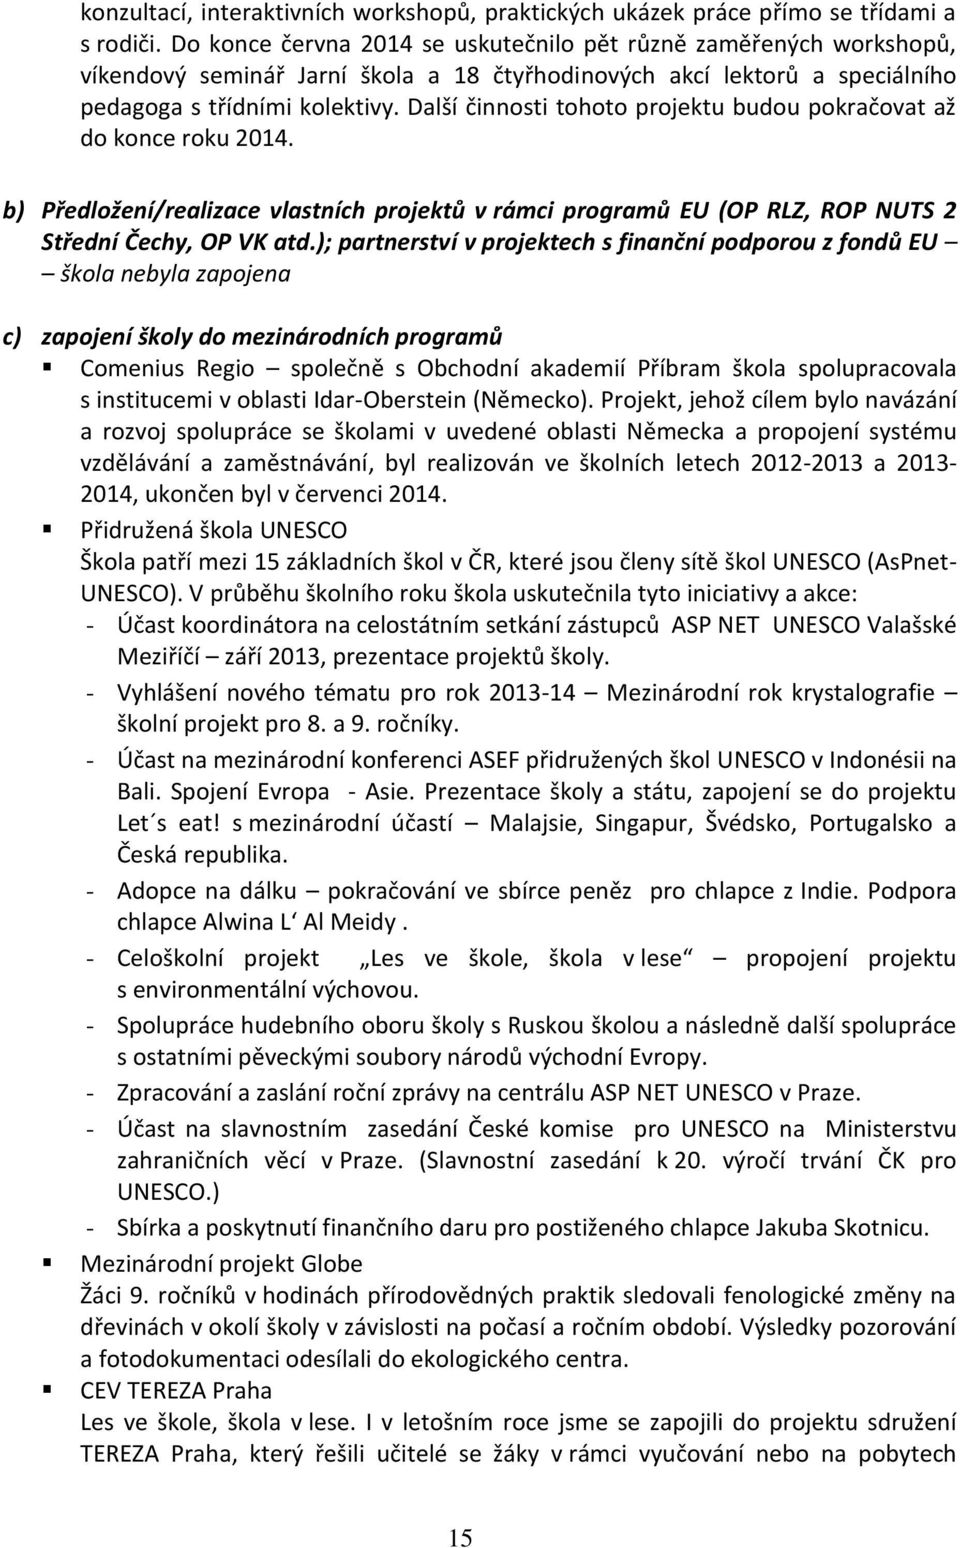 Další činnosti tohoto projektu budou pokračovat až do konce roku 2014. b) Předložení/realizace vlastních projektů v rámci programů EU (OP RLZ, ROP NUTS 2 Střední Čechy, OP VK atd.